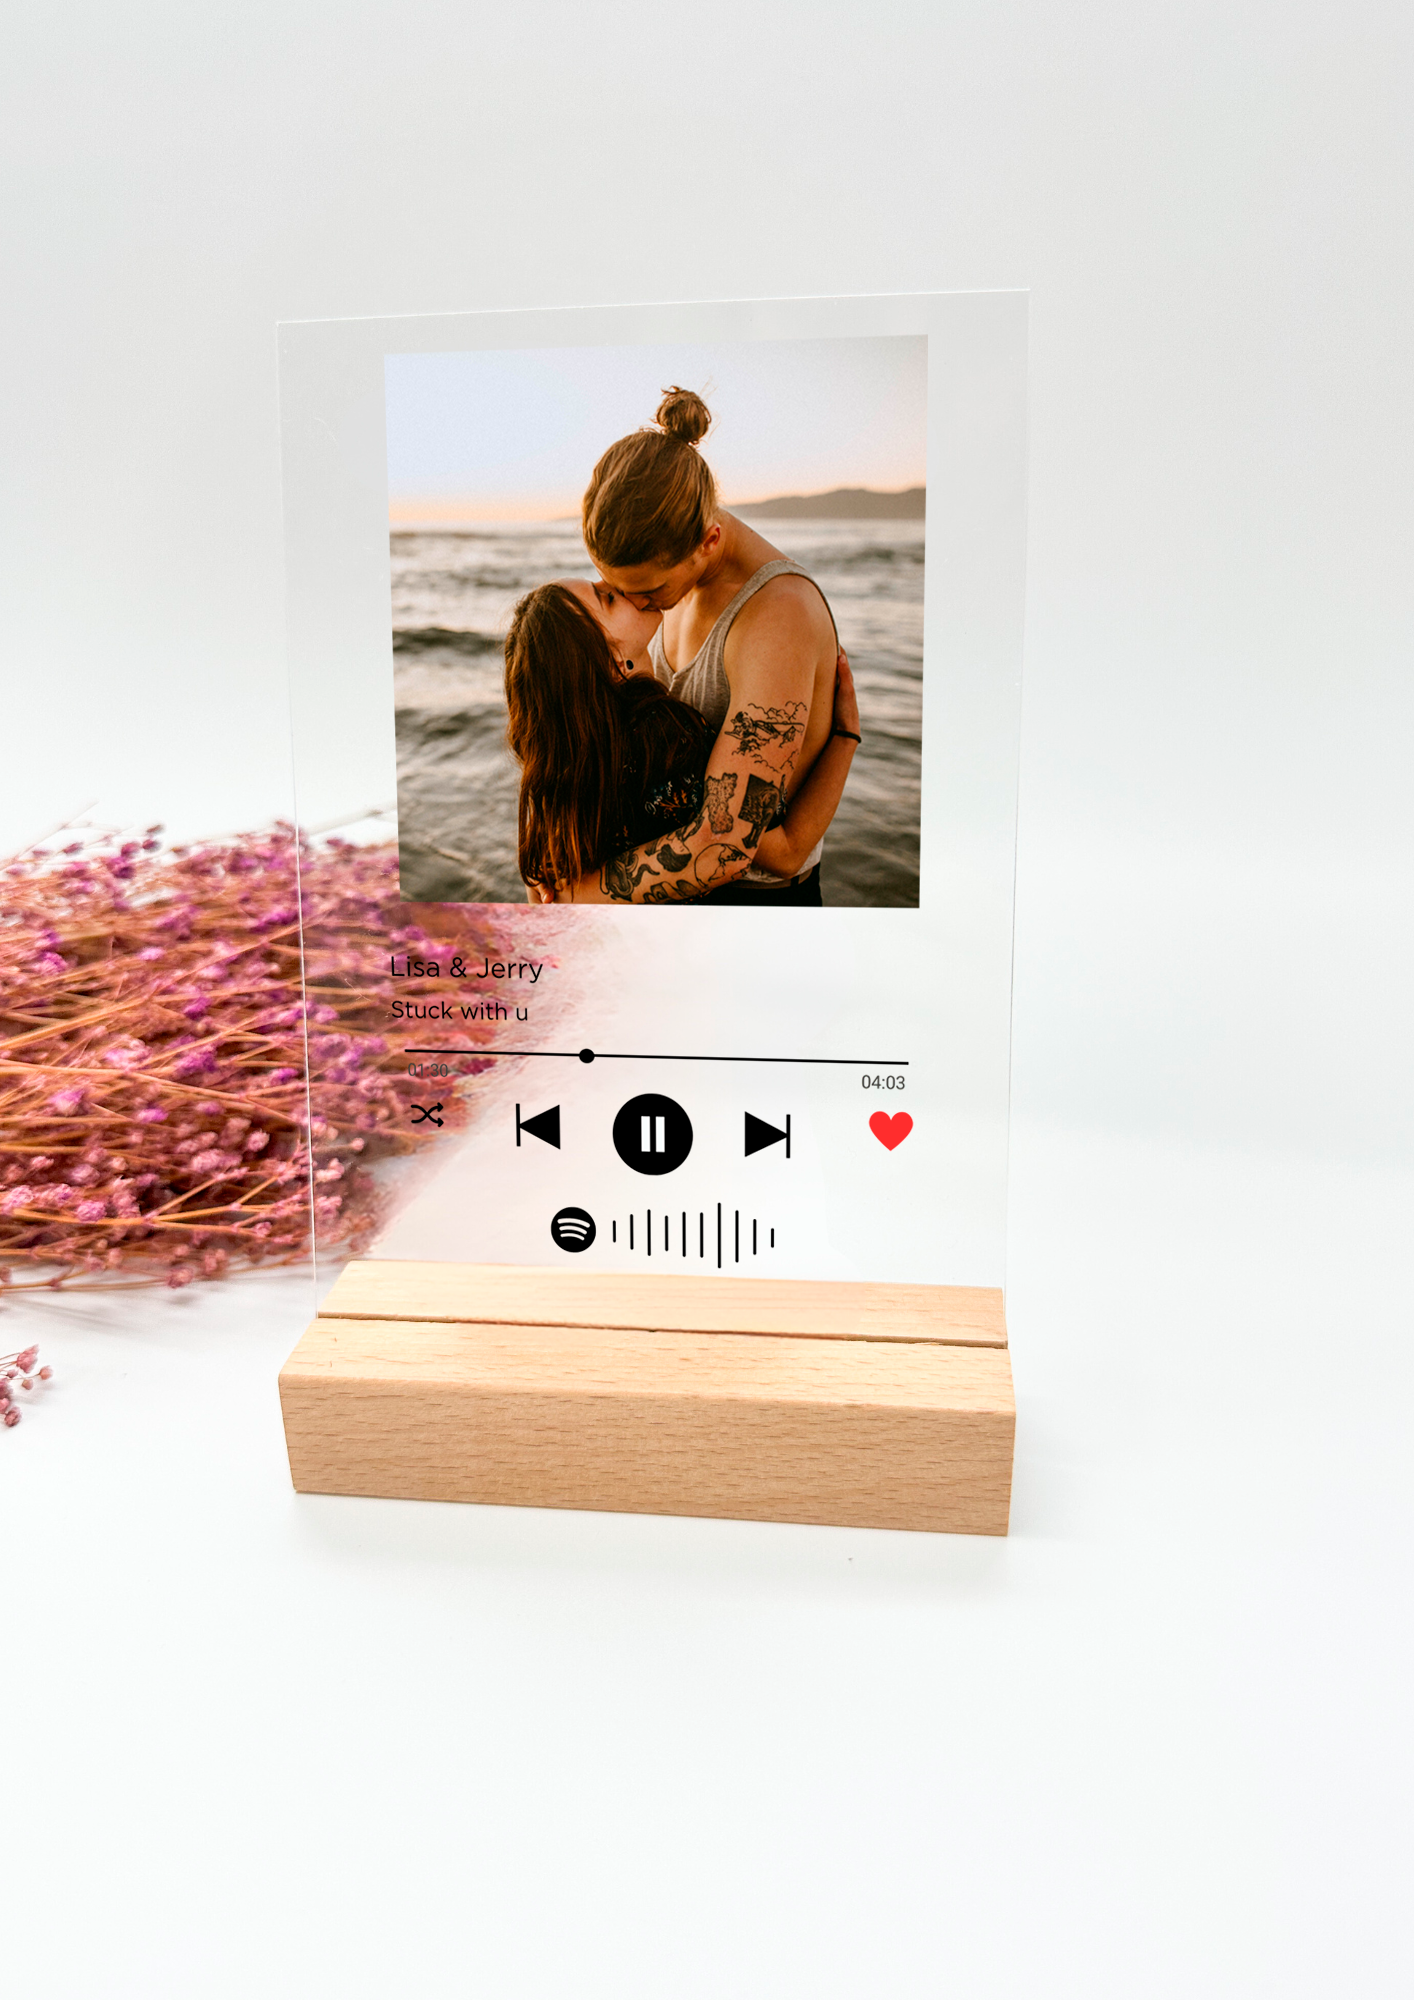 Image musicale sur acrylique/enregistrement de chanson personnalisé/couples cadeaux